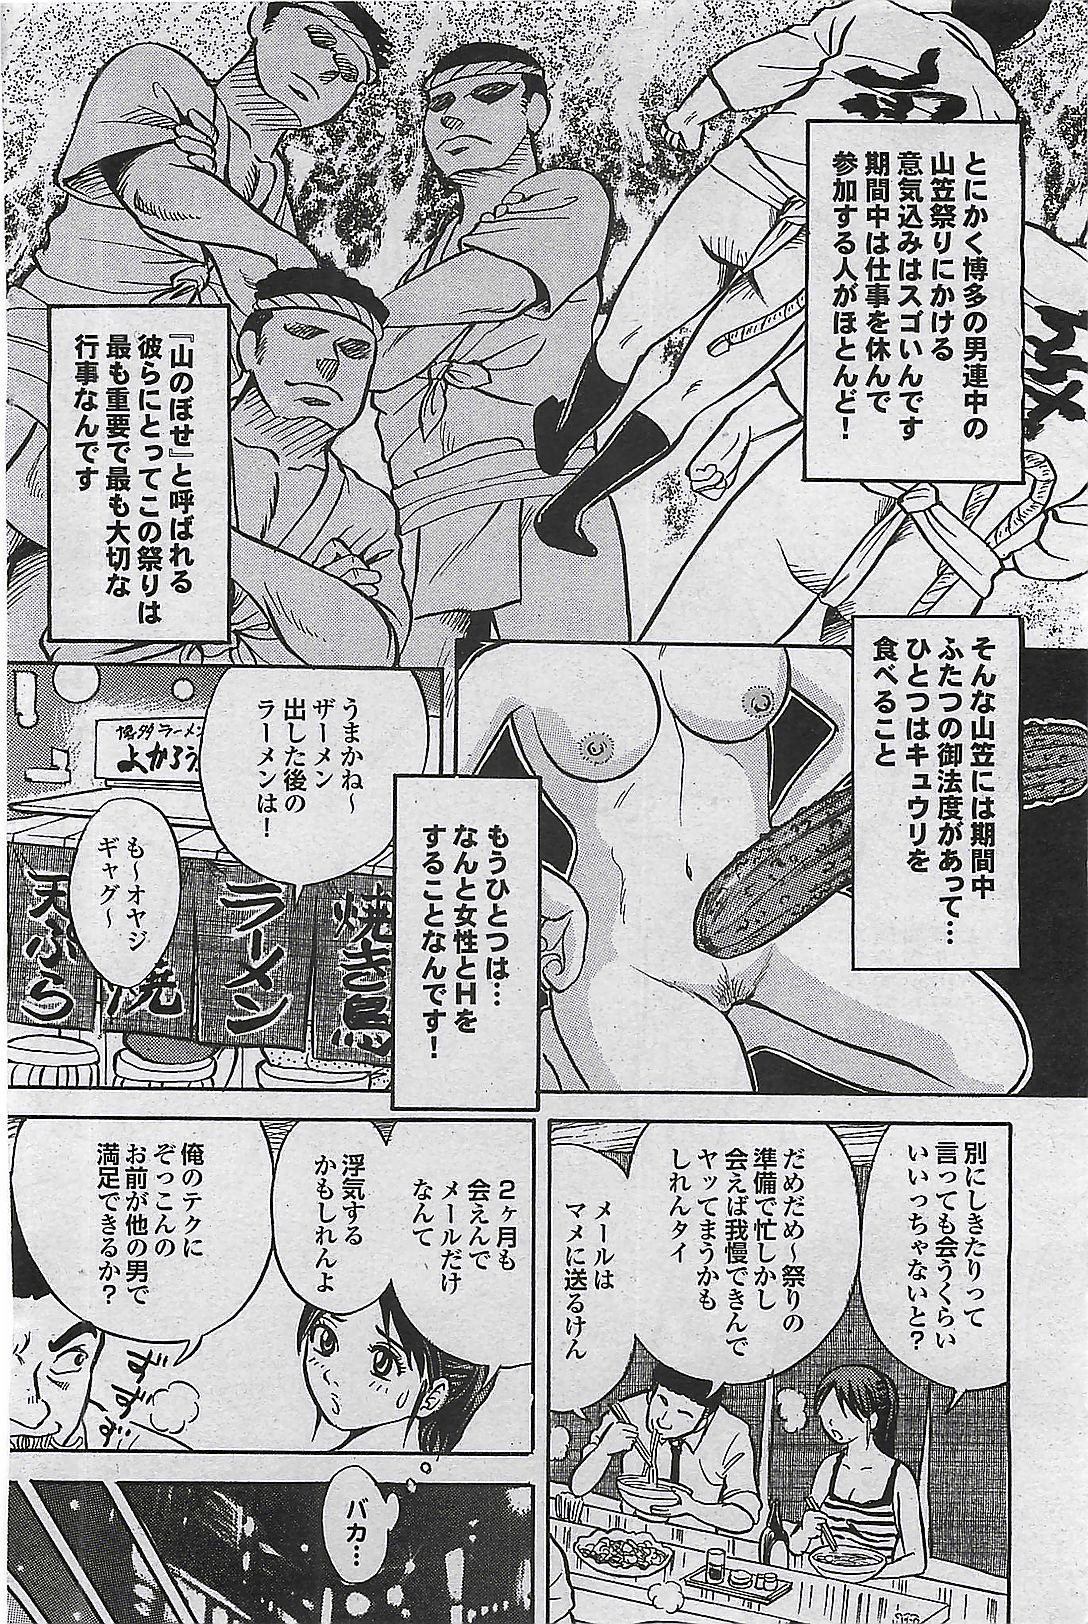 Mitsu-Man 2008-09 Vol. 1 103